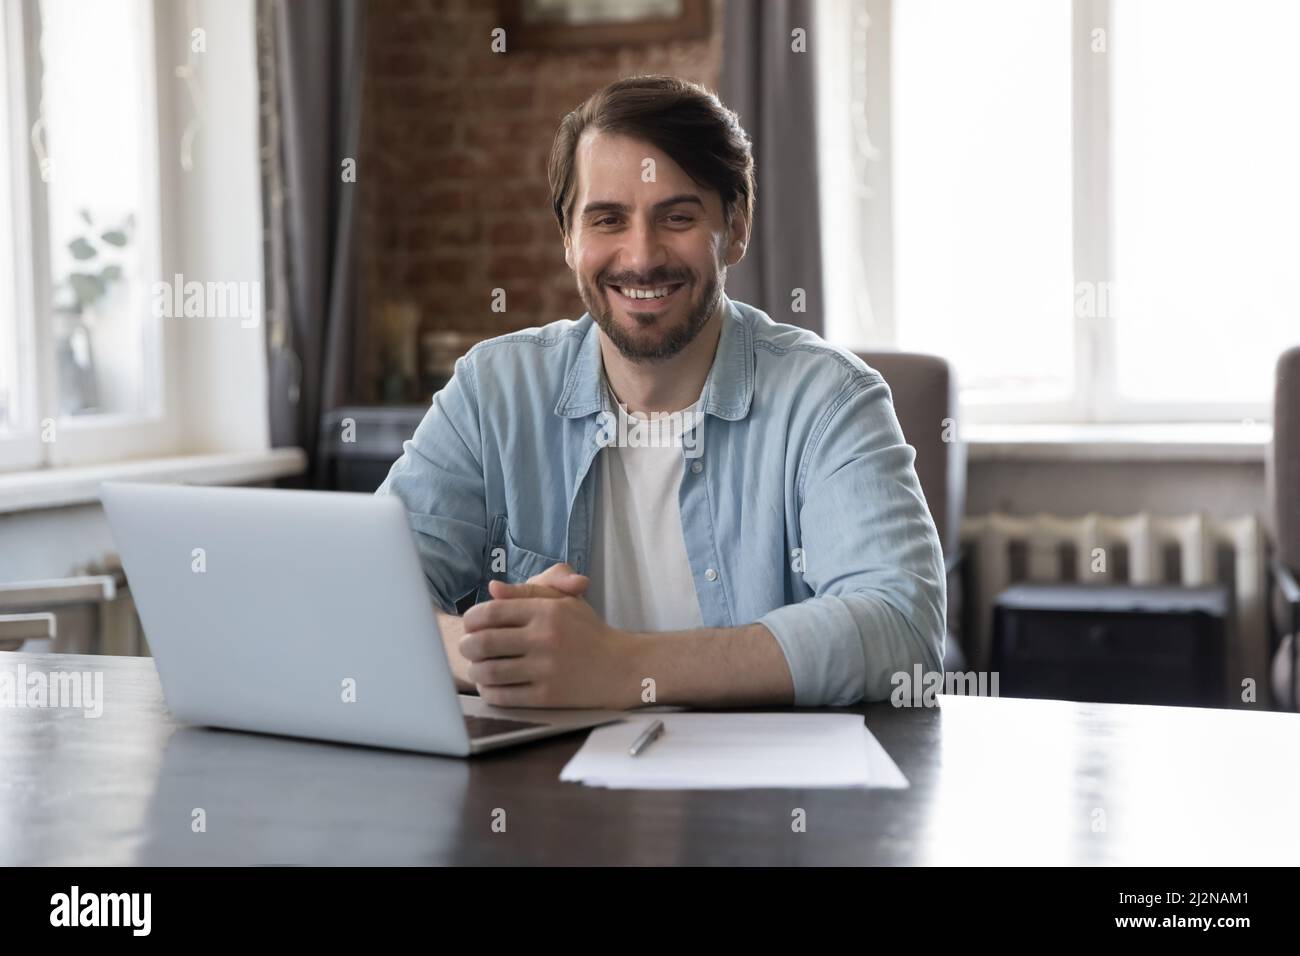 Glücklicher, selbstbewusster Projektleiter, der mit einem Laptop am Arbeitsplatz sitzt Stockfoto